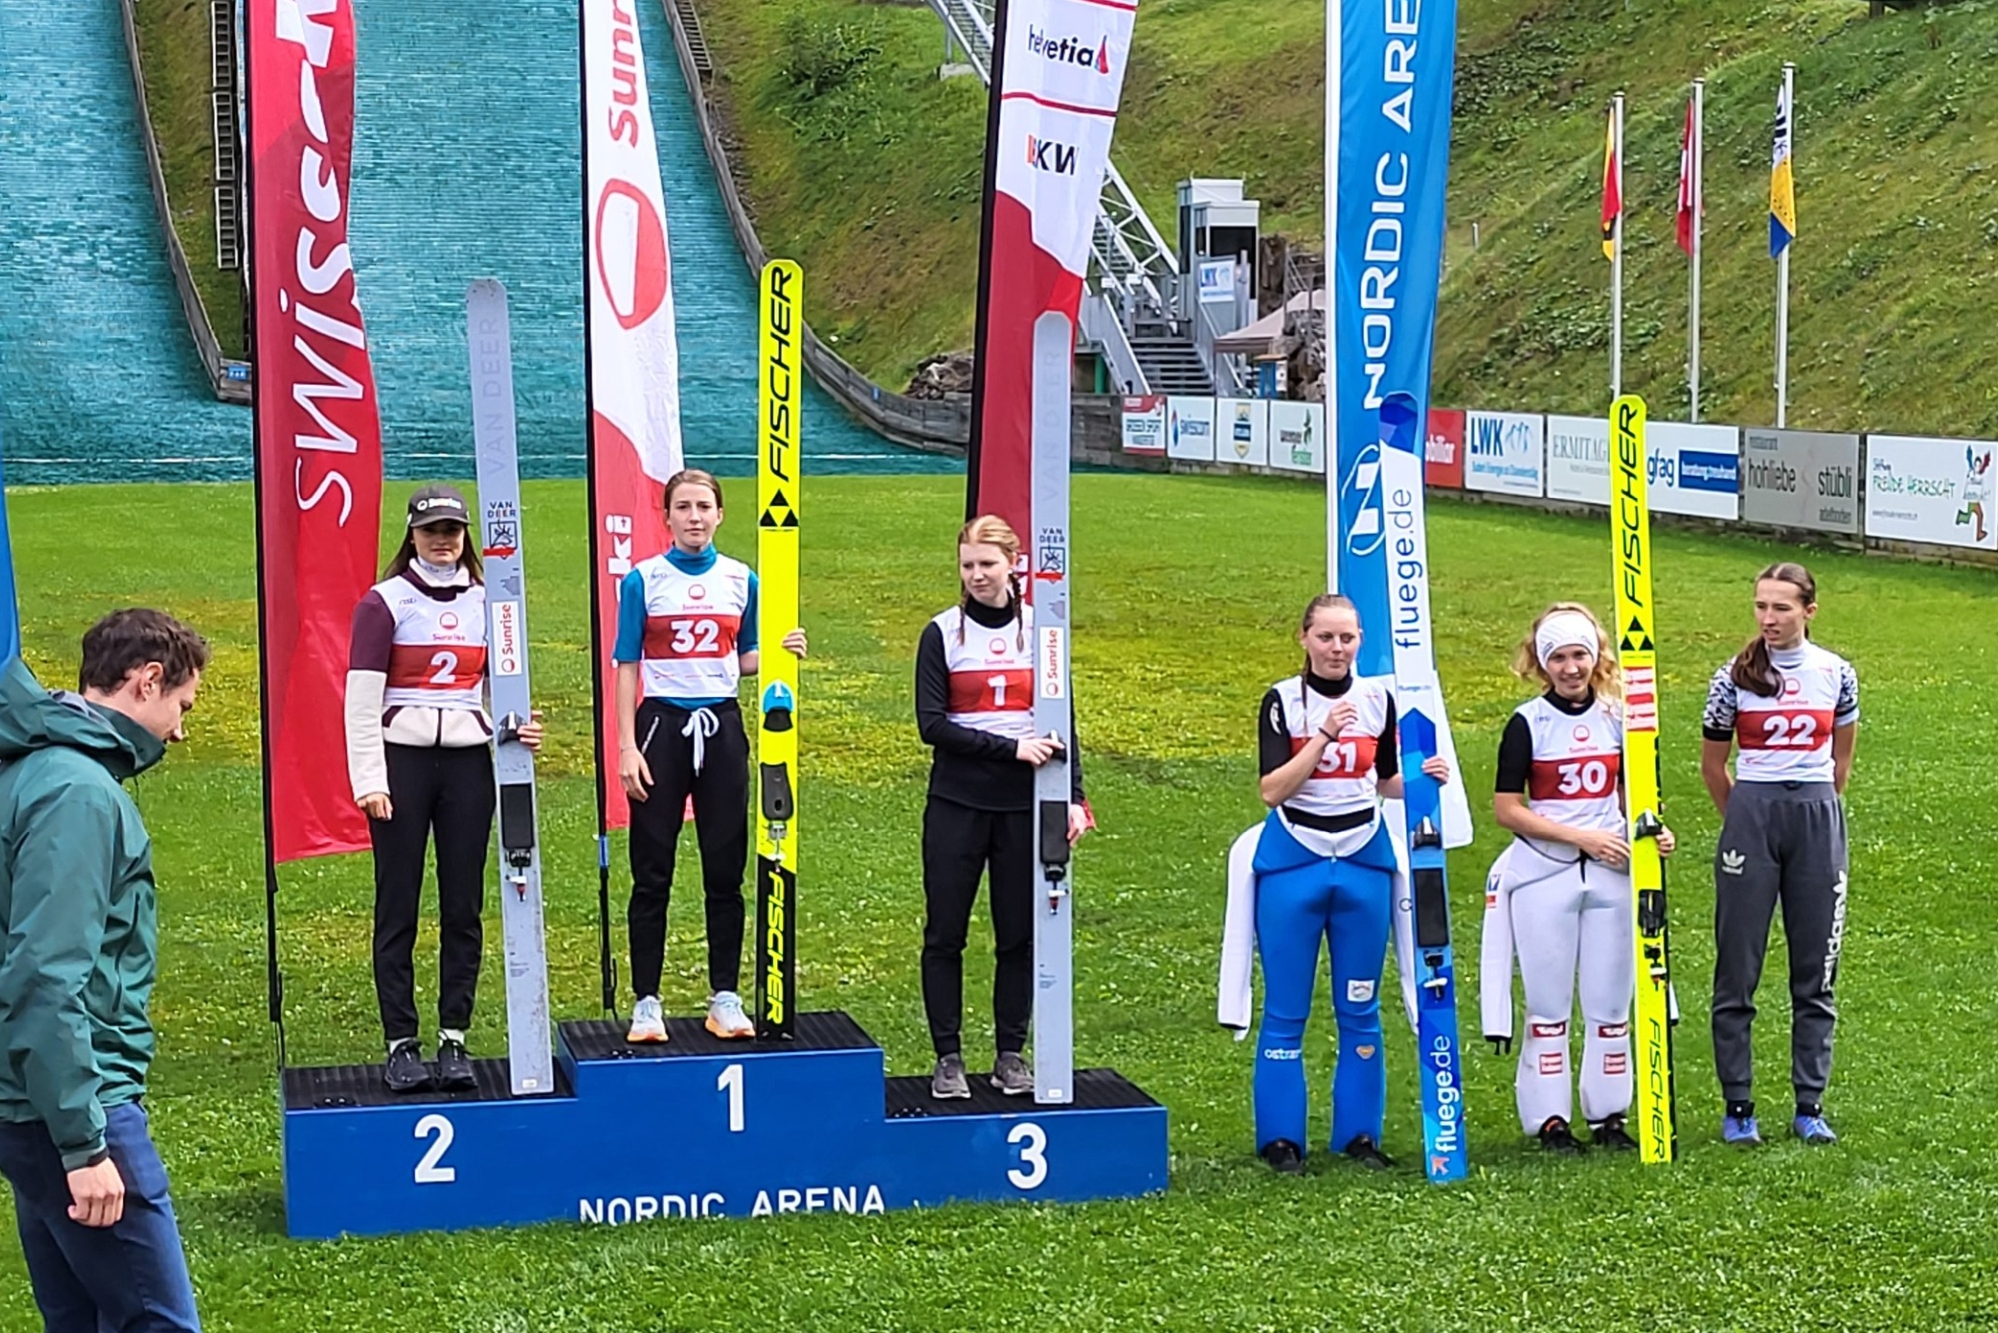 You are currently viewing Alpen Cup kobiet: 15-letnia Słowenka dwukrotnie najlepsza w Kanderstegu, dwie Szwajcarki na podium